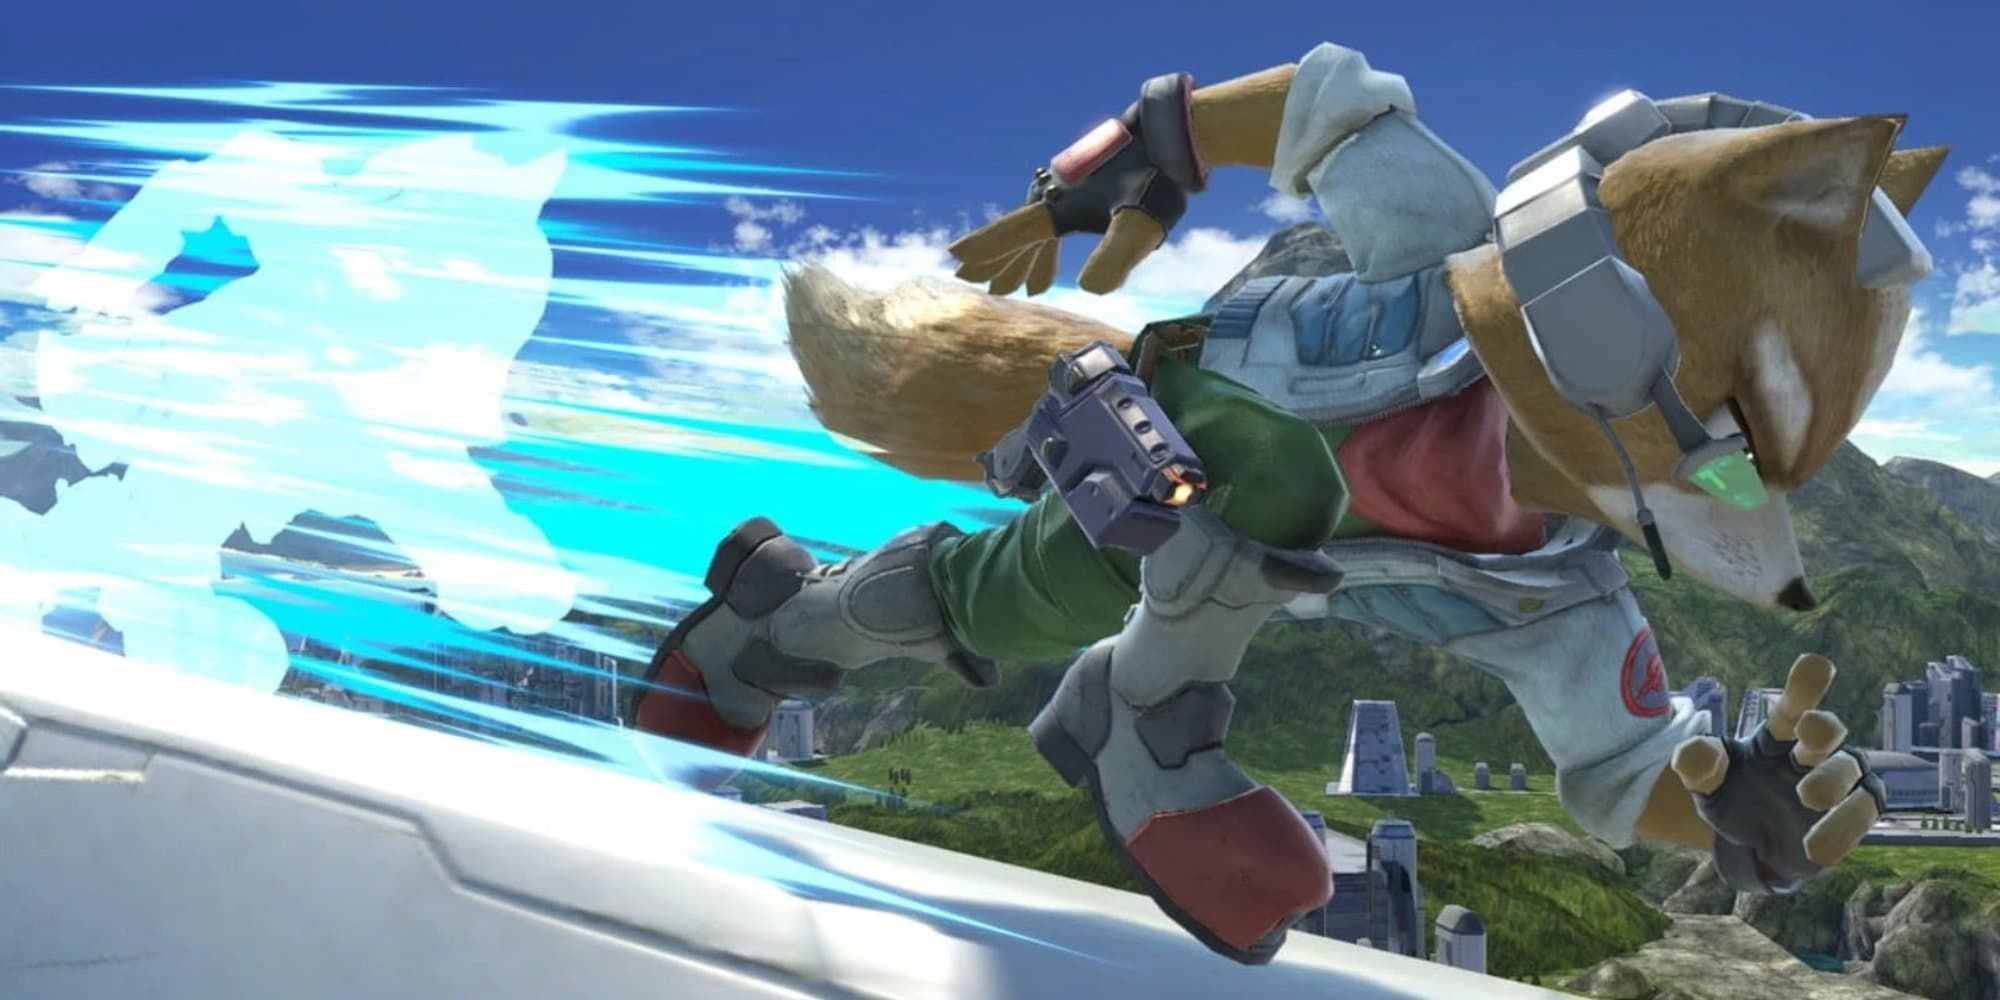 Starfox's Fox McCloud lunges forward in Super Smash Bros. leaving a blue streak behind him.